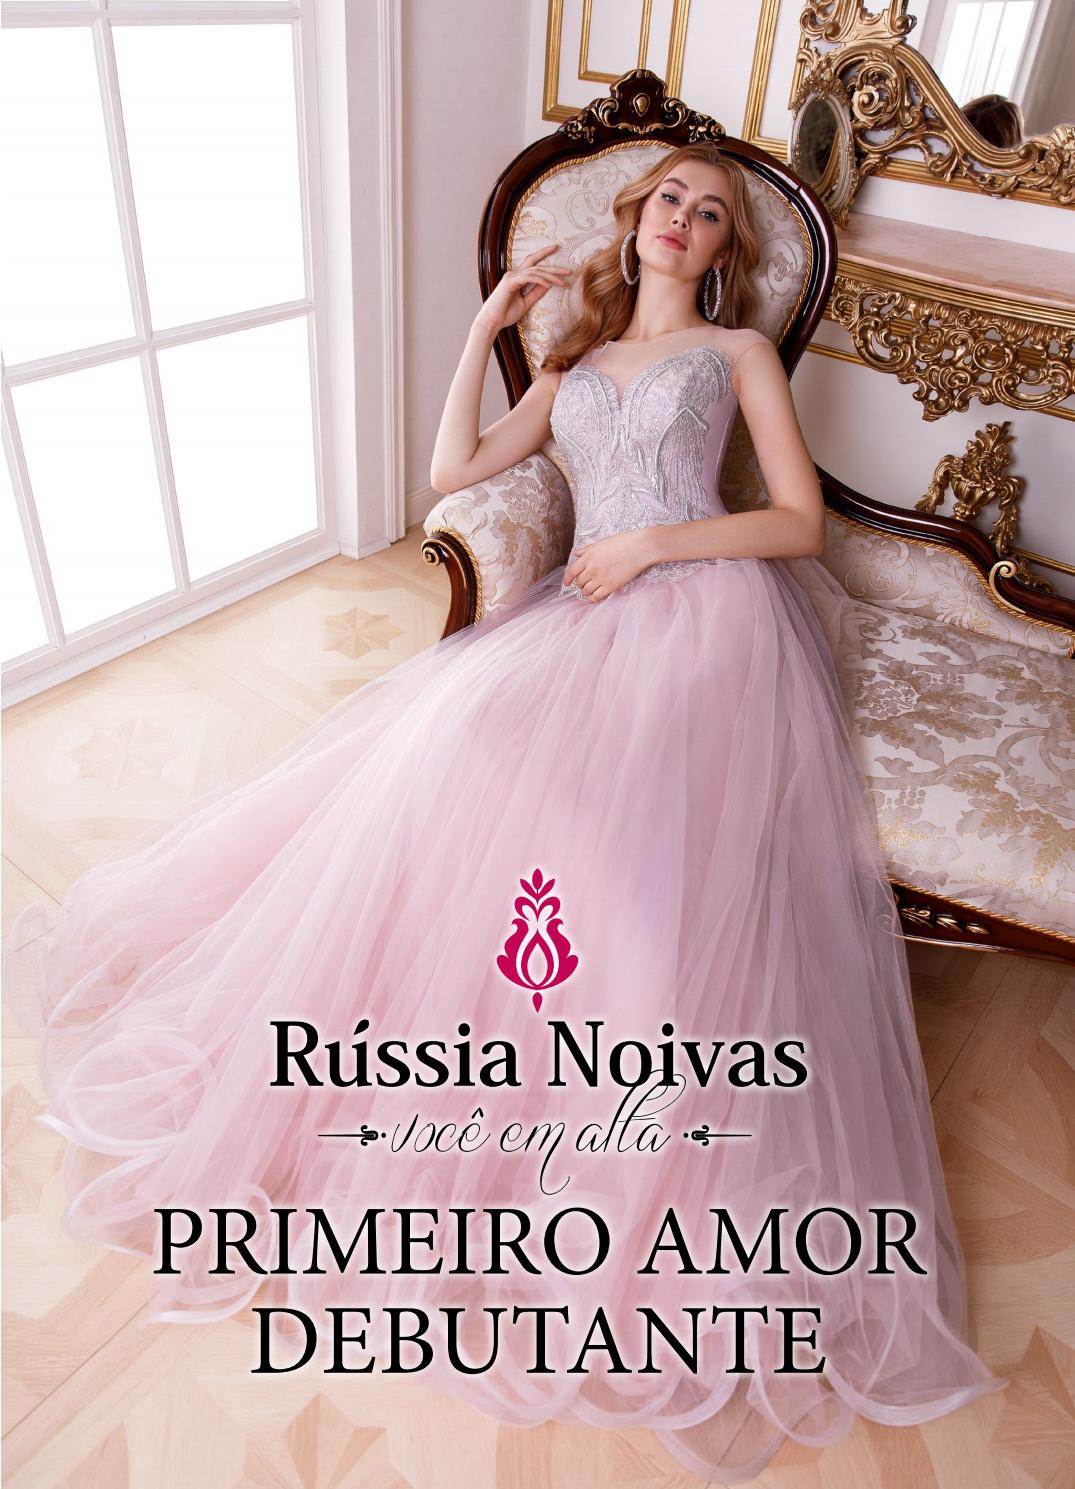 俄罗斯知名婚纱礼服设计画册大全_流行趋势_Russia Noivas2019图片